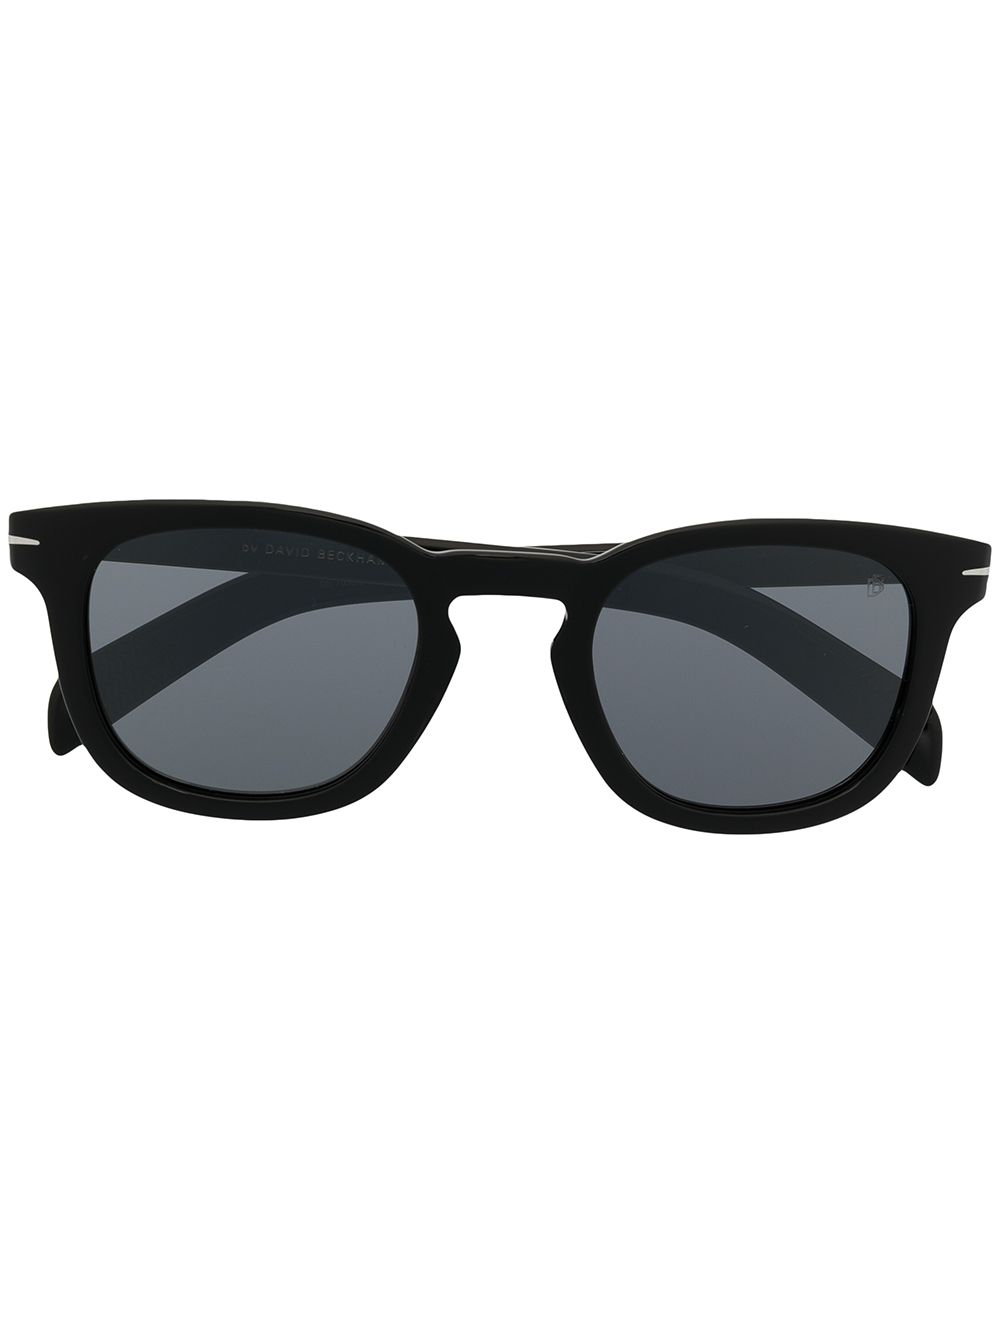 Eyewear by David Beckham square frame sunglasses - Black von Eyewear by David Beckham